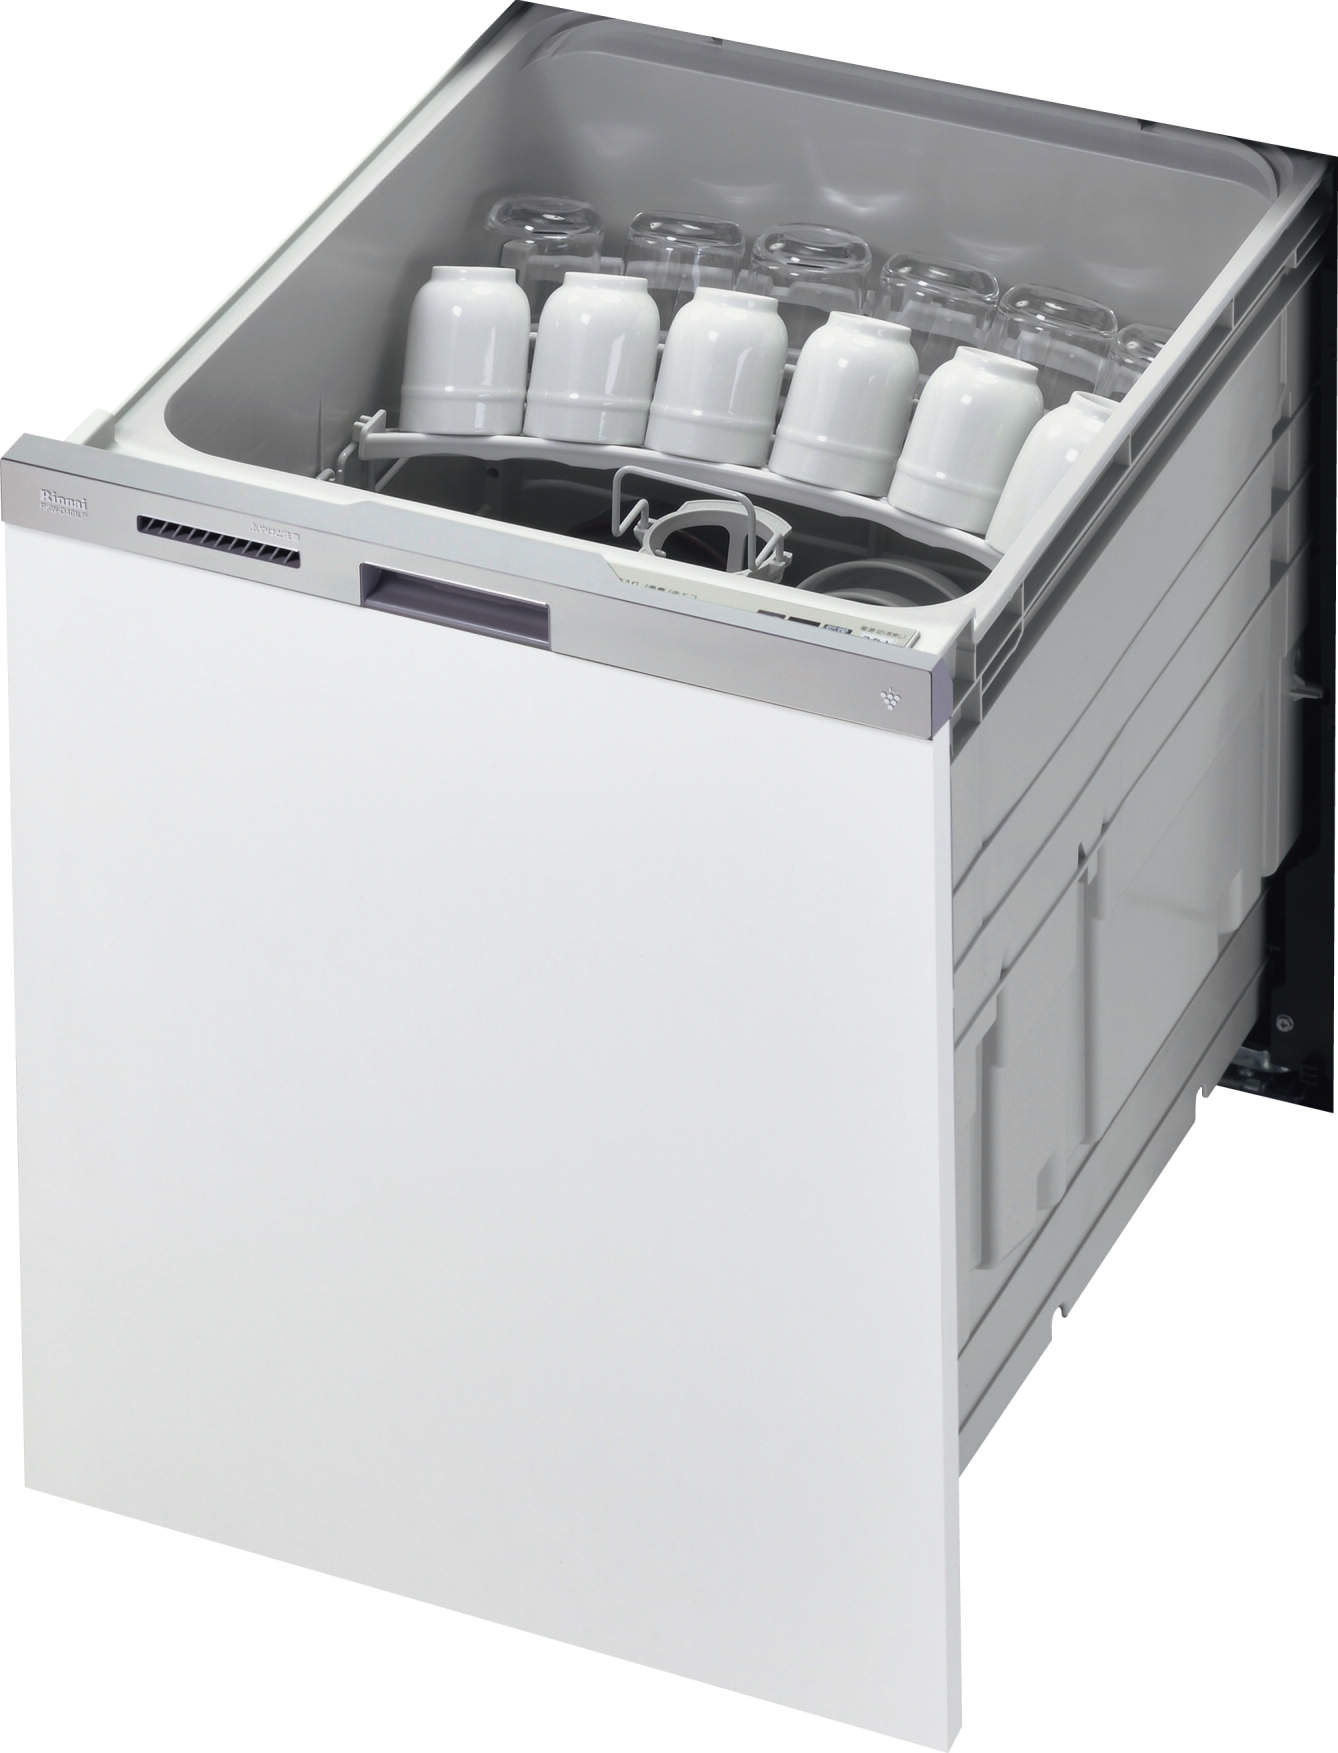 食器洗い乾燥機 ディープタイプ リンナイ RKW-D401LPMA Rinnai